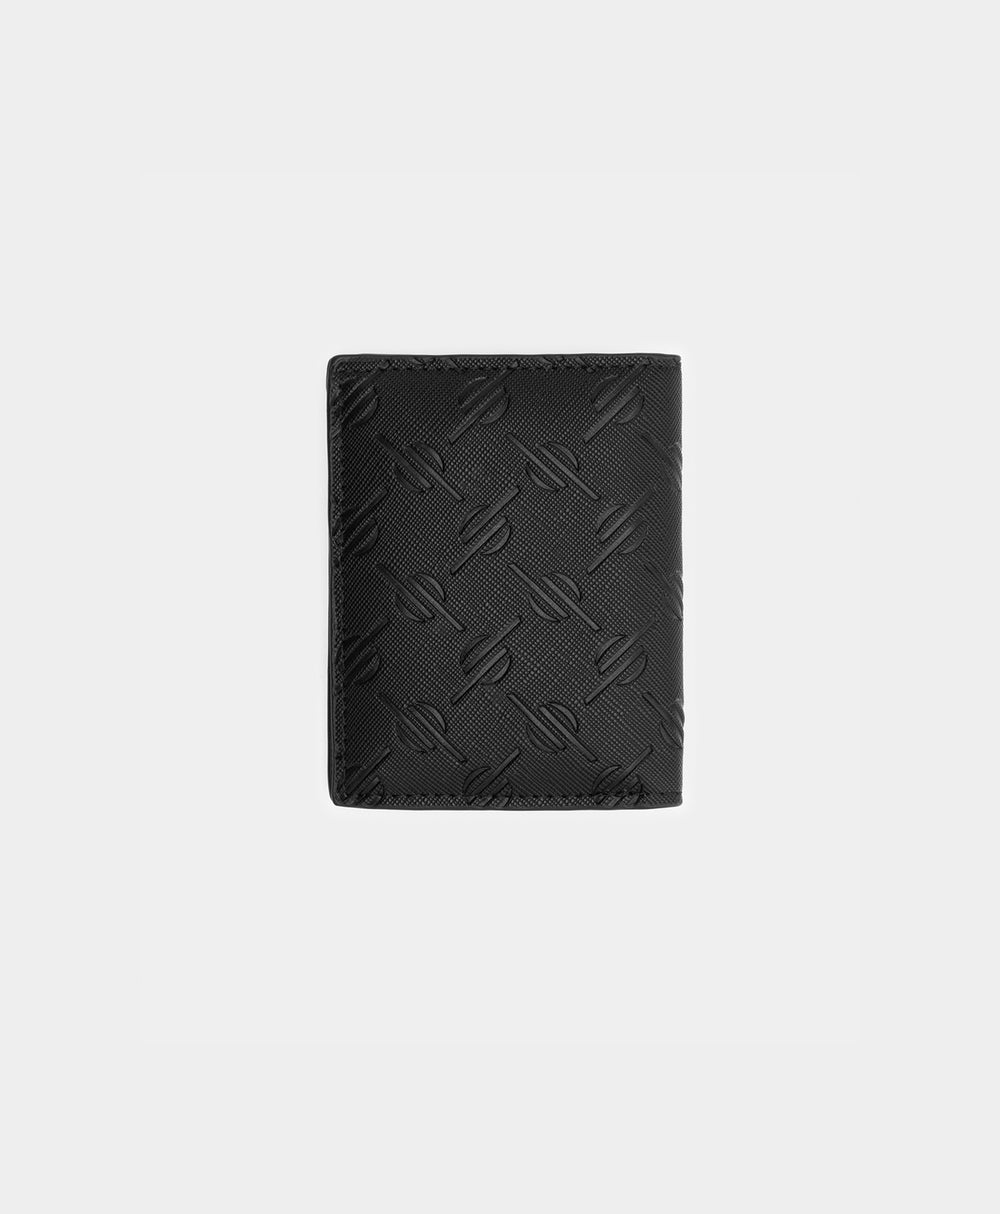 DP - Black Kidis Monogram Wallet - Packshot - Rear